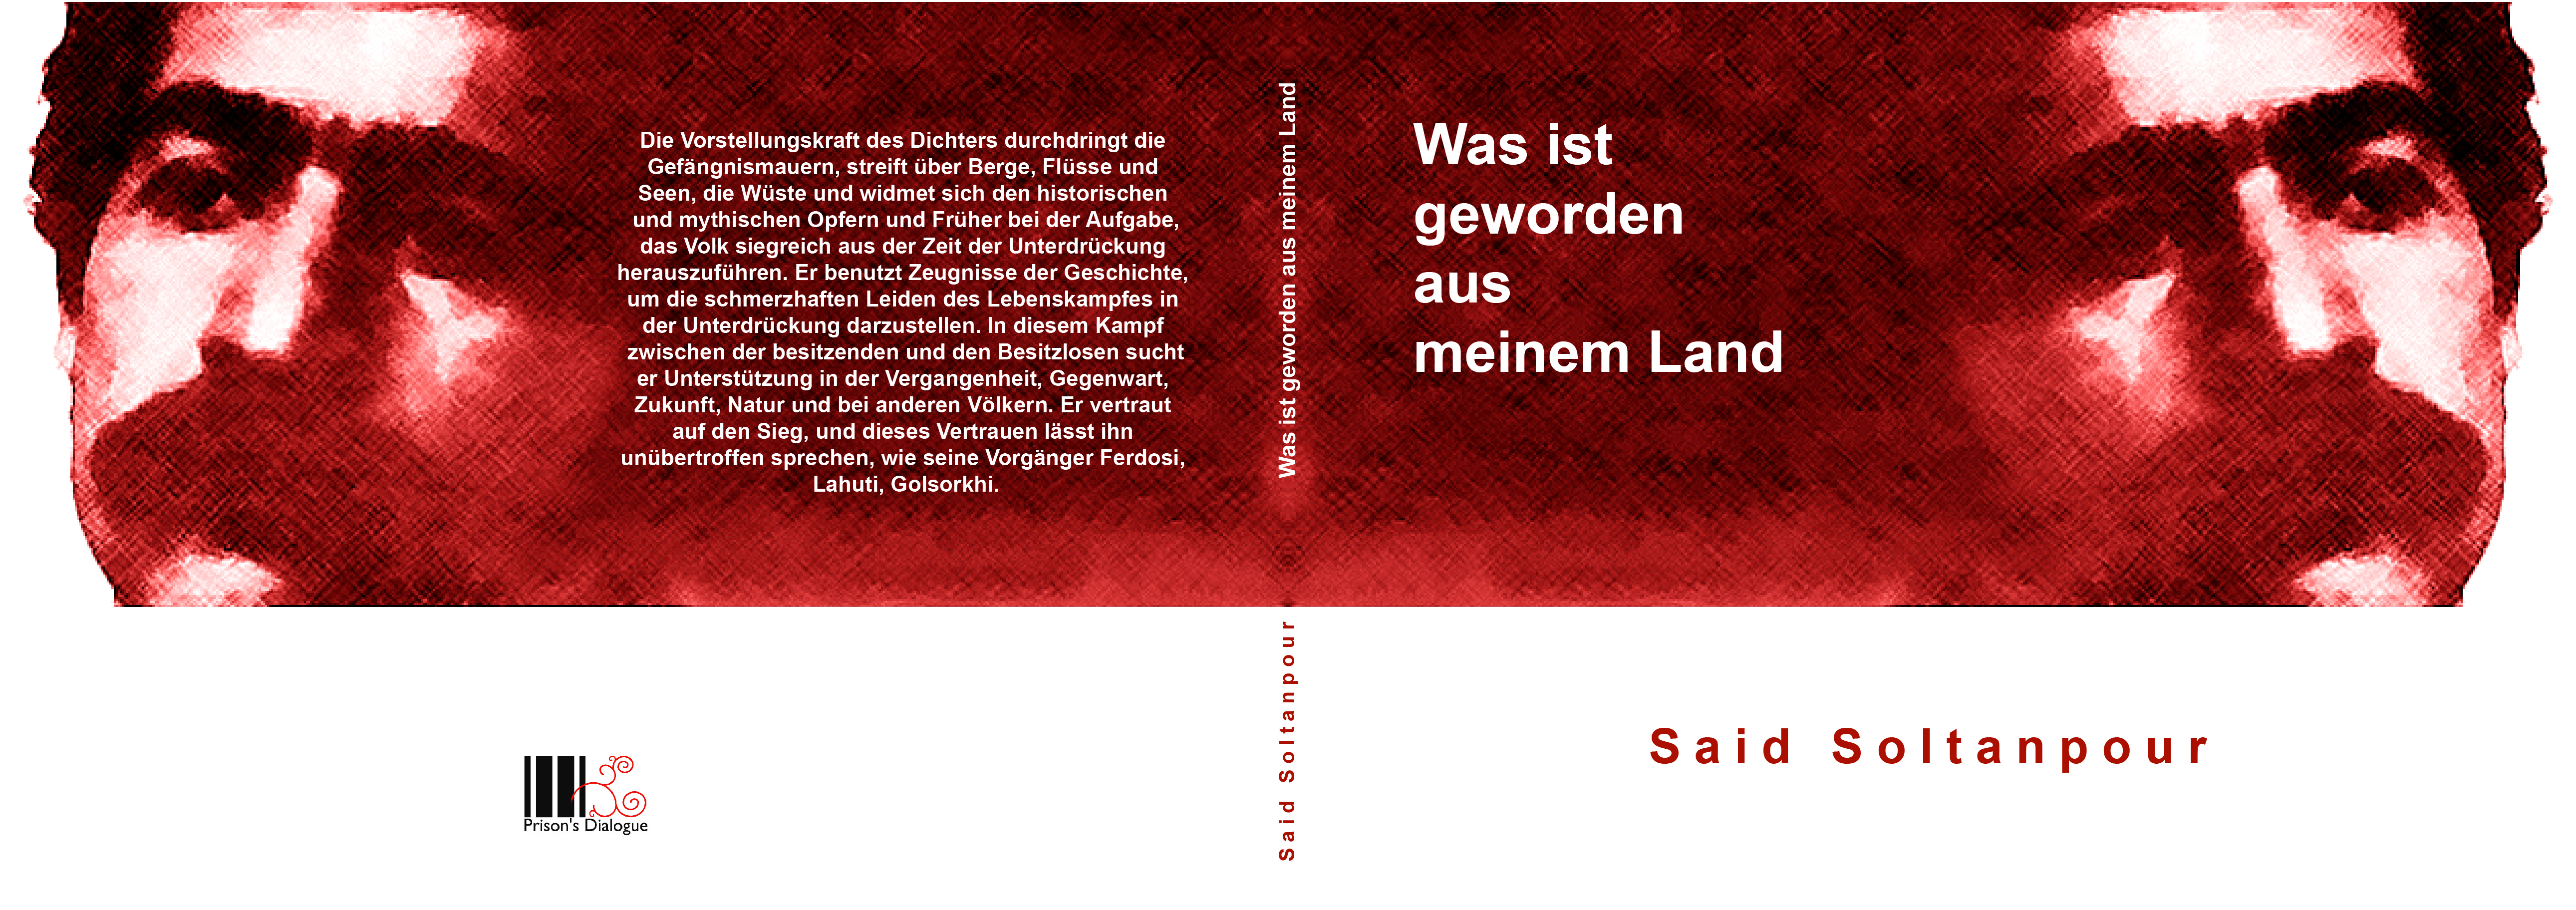 بر کشورم چه رفته است - گفتگوهای زندان به زبان آلمانی منتشر کرد: کتابی درباره زندگی و آثار سعید سلطانپور